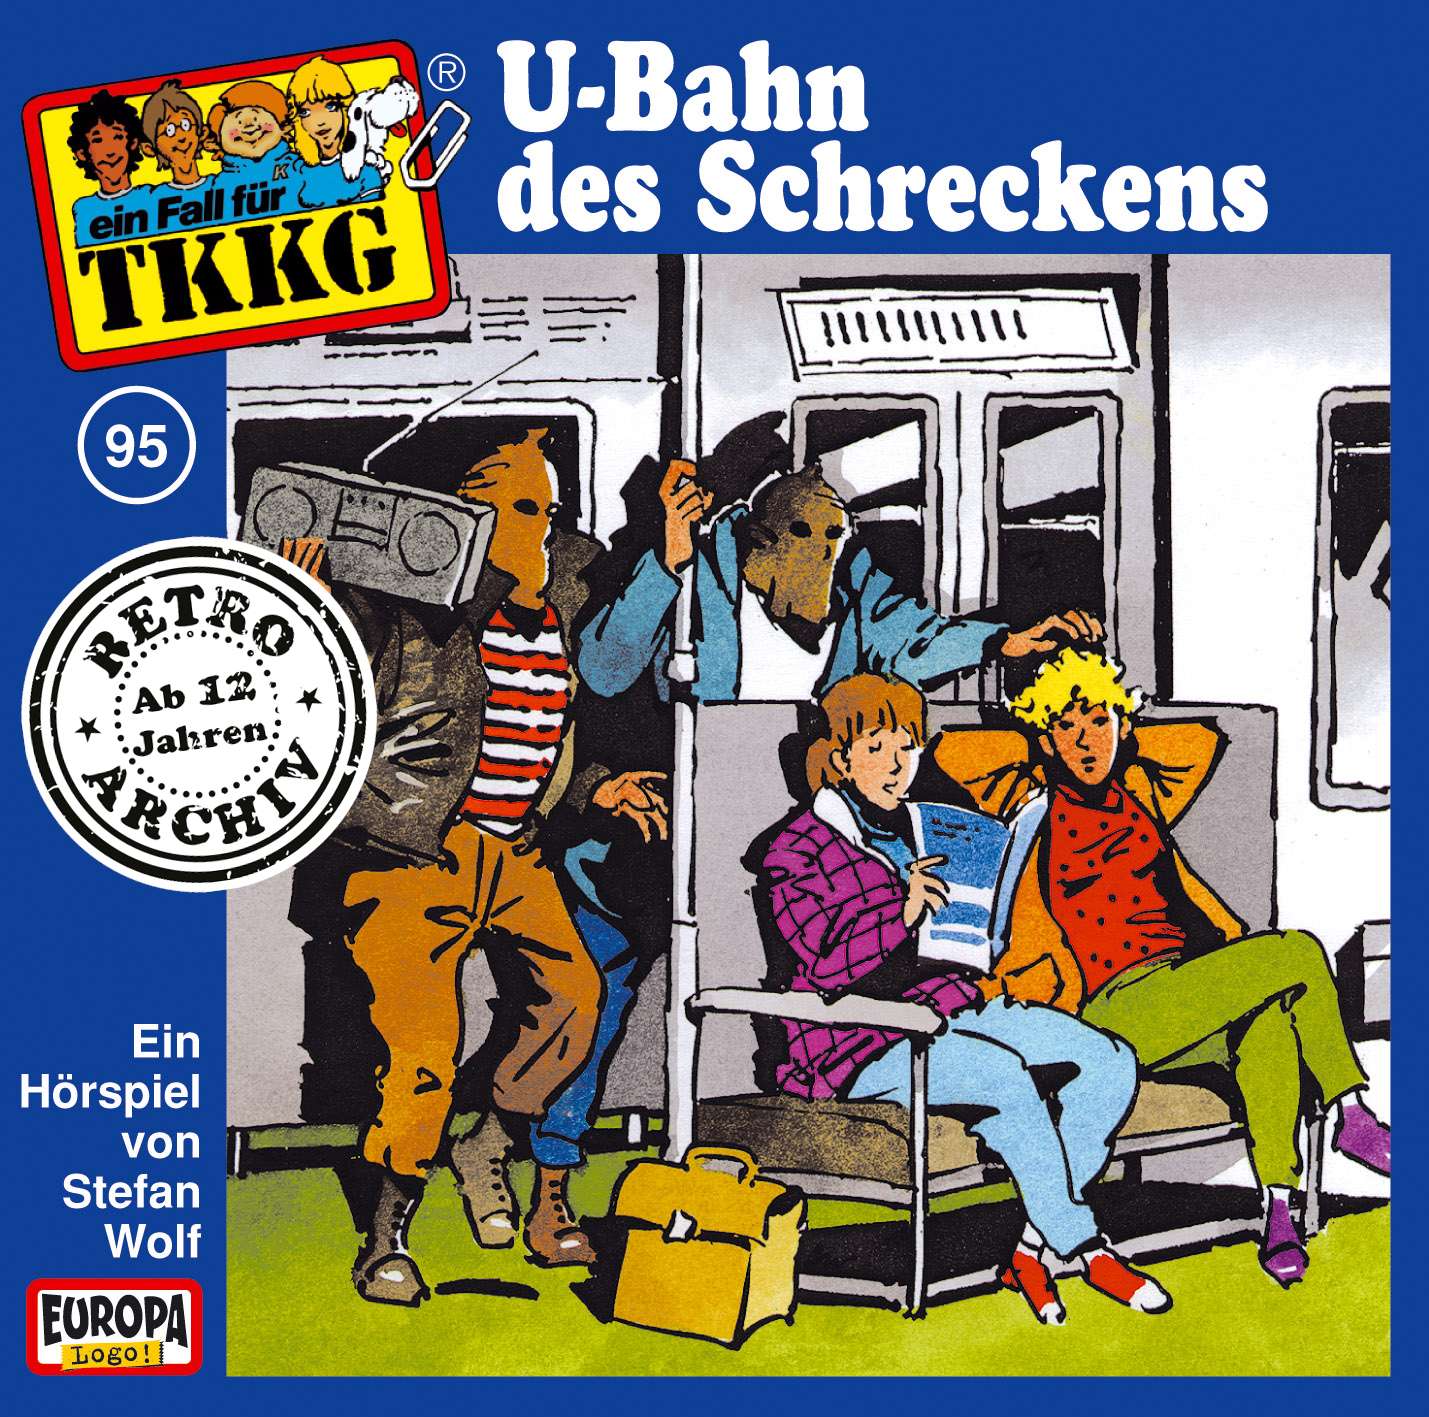 TKKG Retro-Archiv: U-Bahn des Schreckens